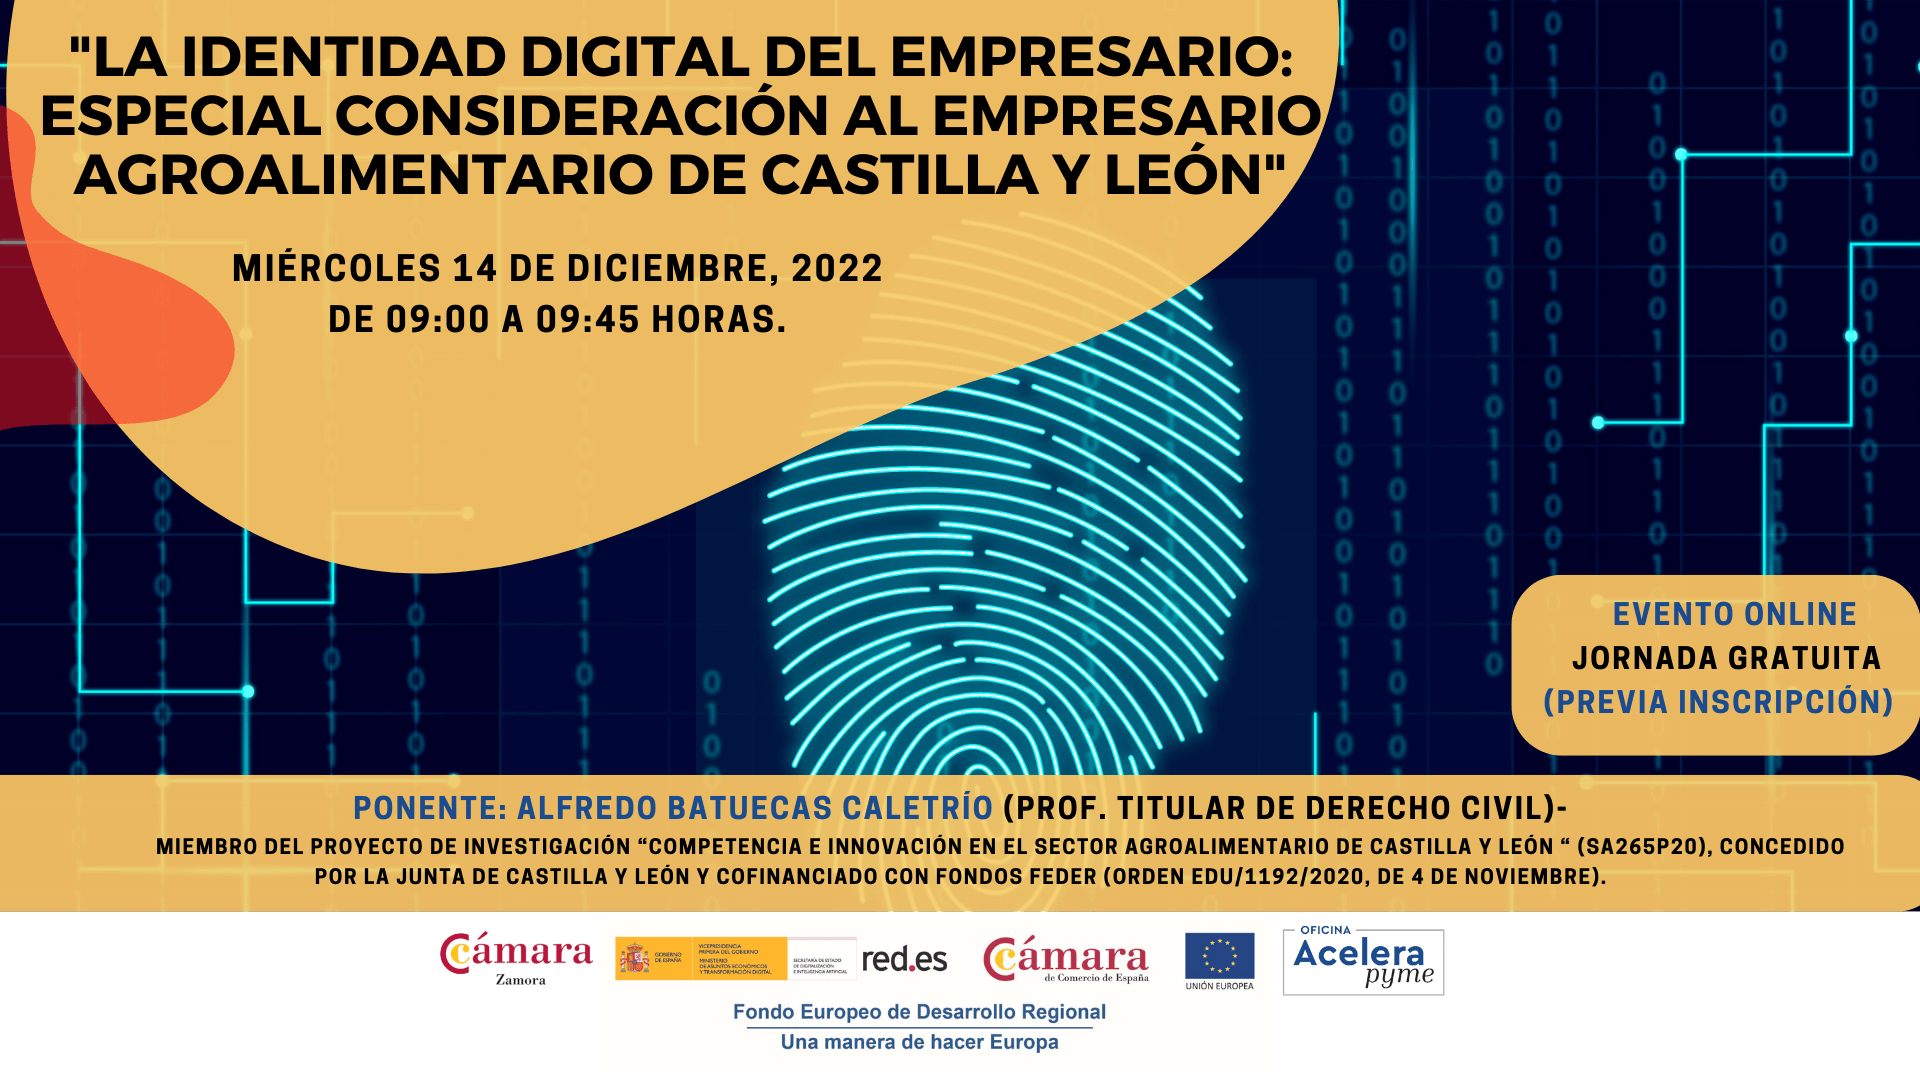 La identidad digital del empresario especial consideración al empresario agroalimentario de Castilla y León